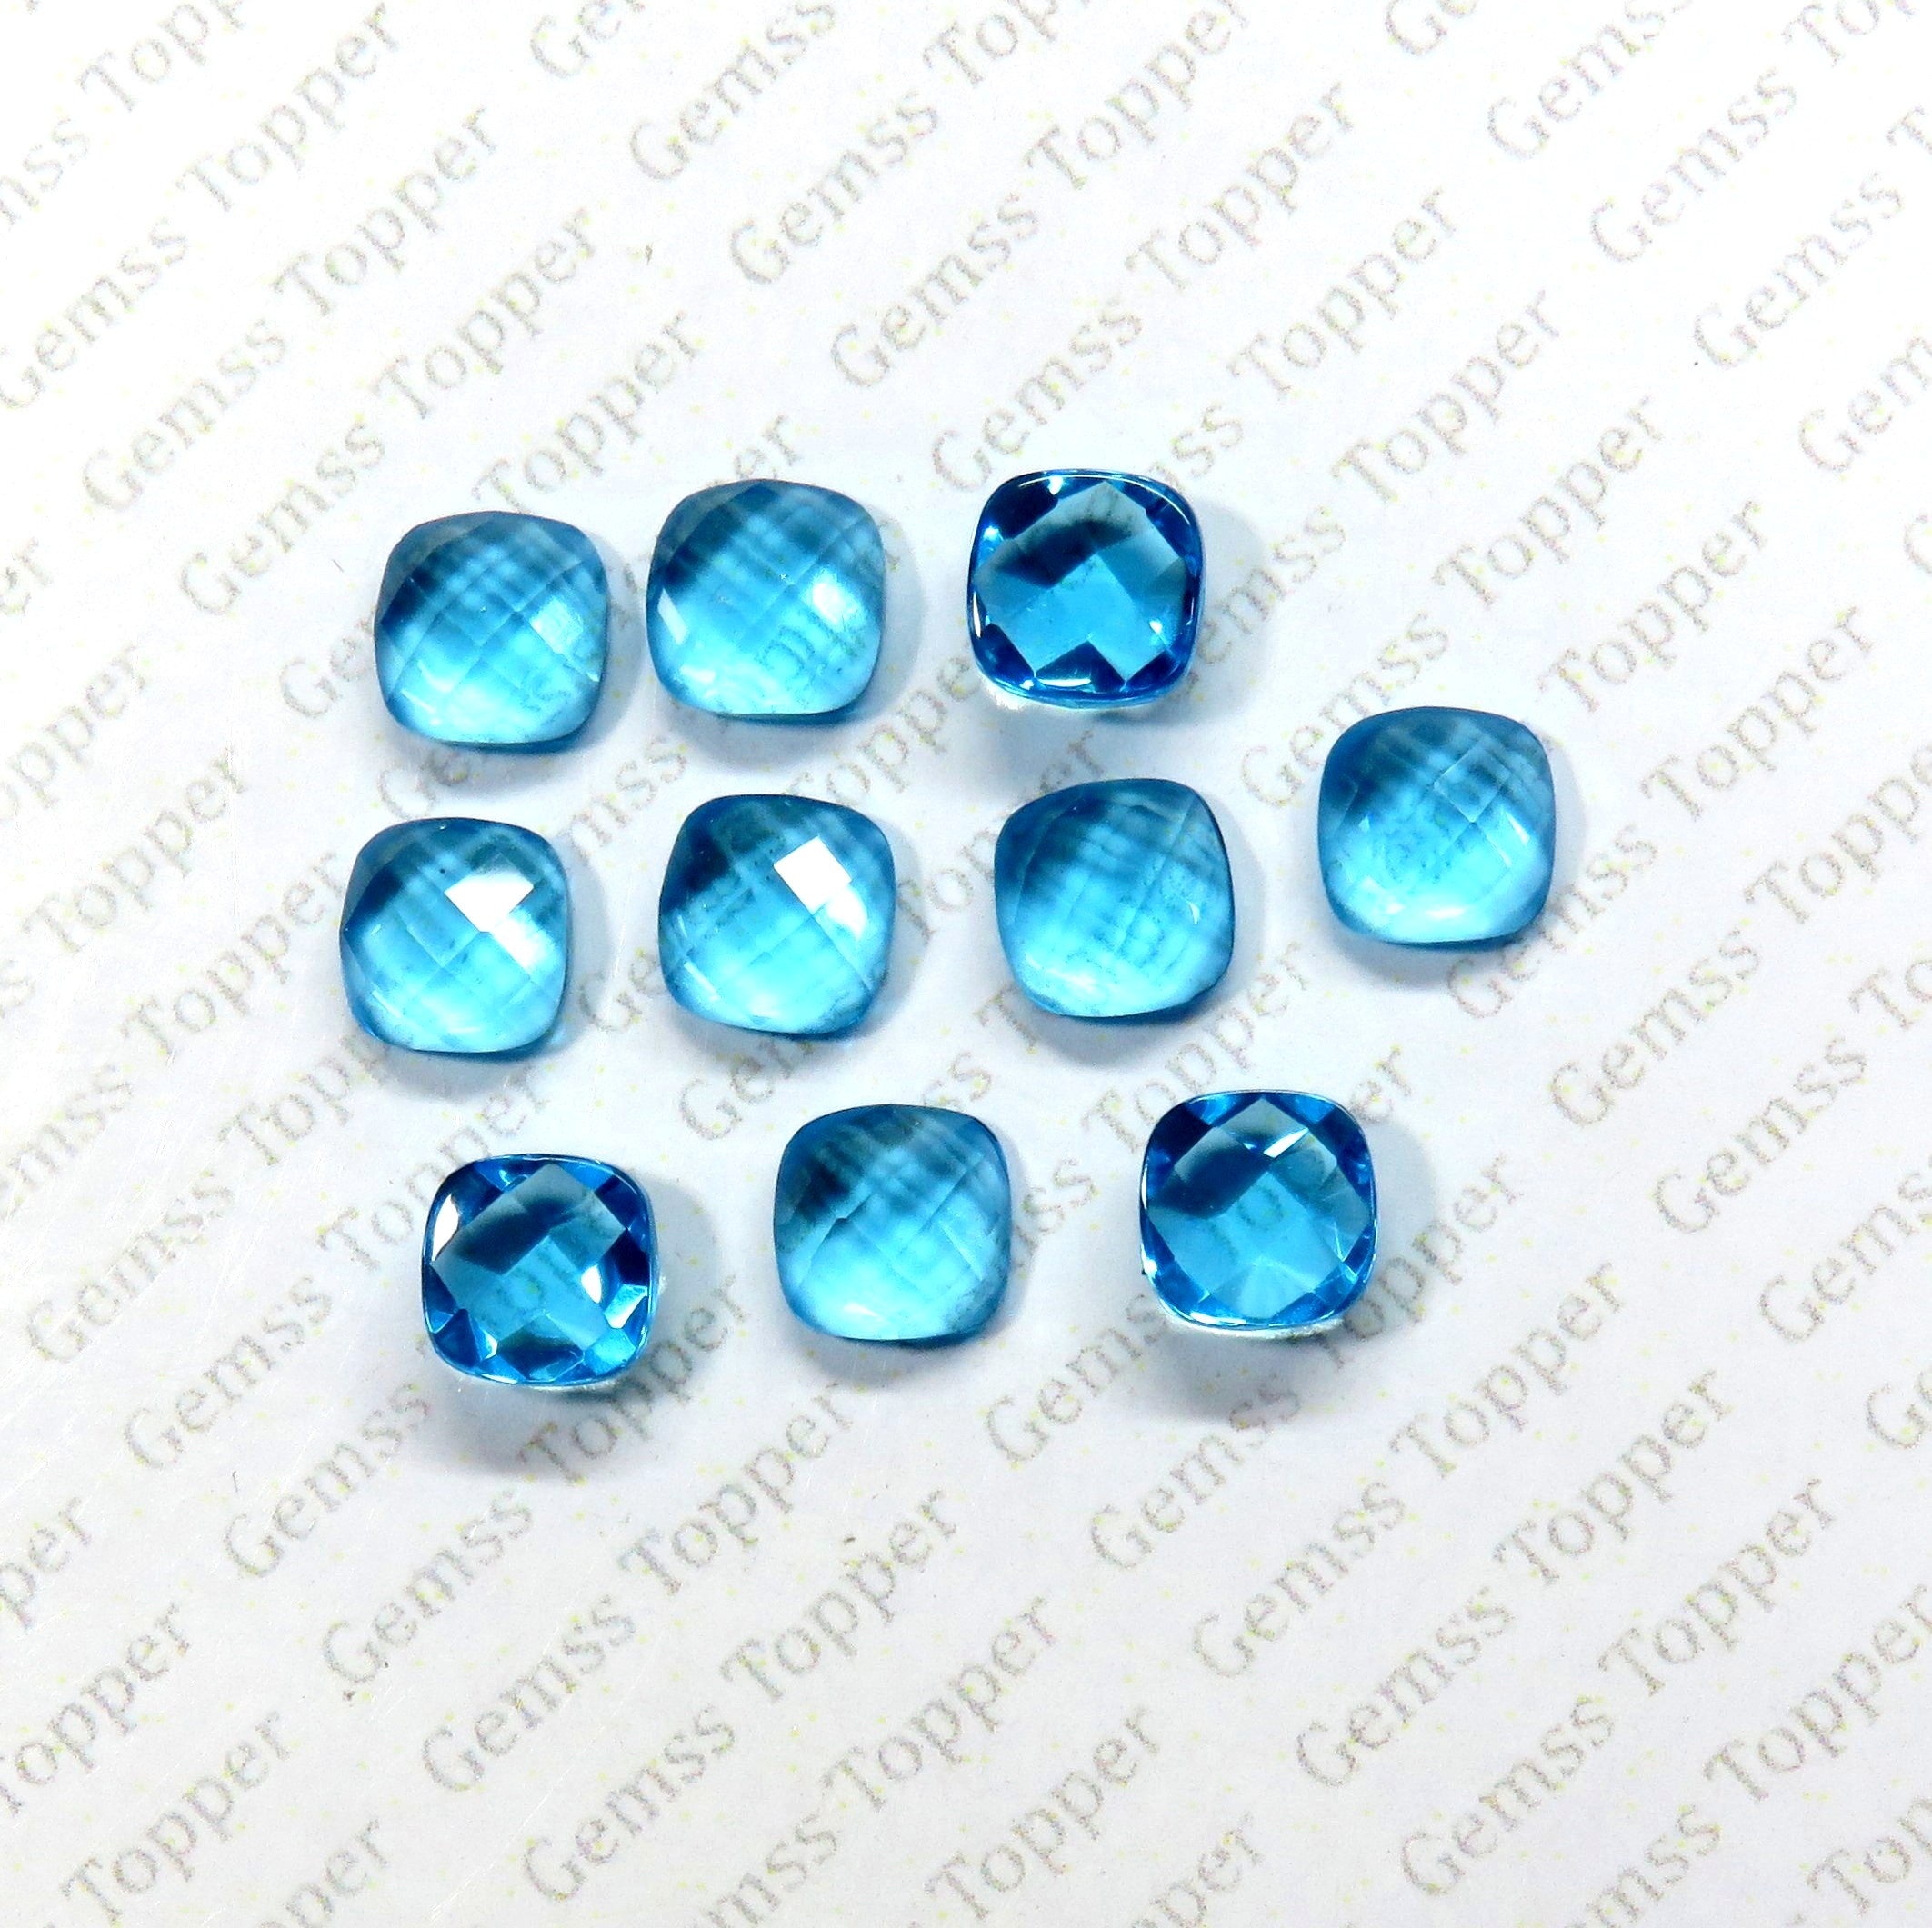 100% Natural Swiss Blue Topaz 5 mm Cushion Checker Cut- AAA Quality Swiss Blue Topaz Checker Cut